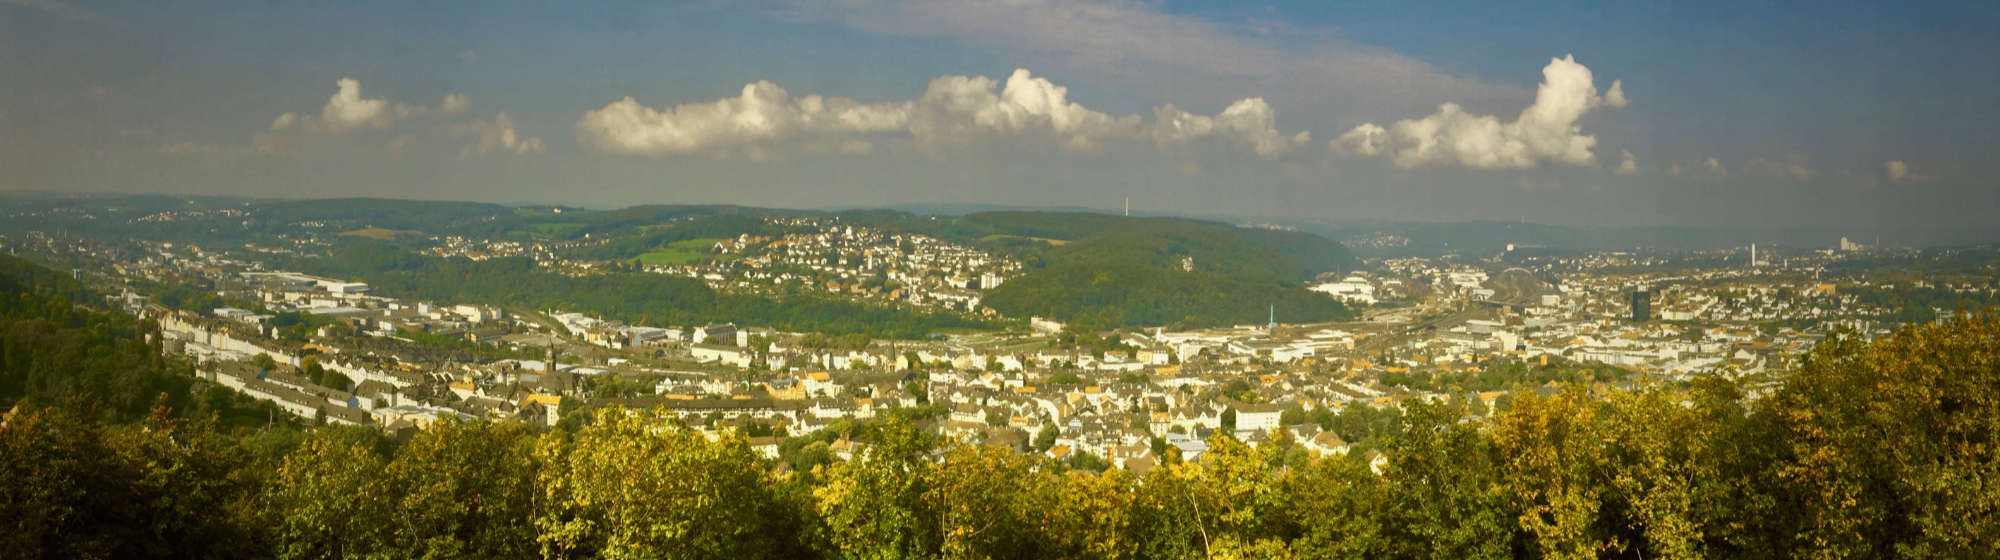 Hagen Overview